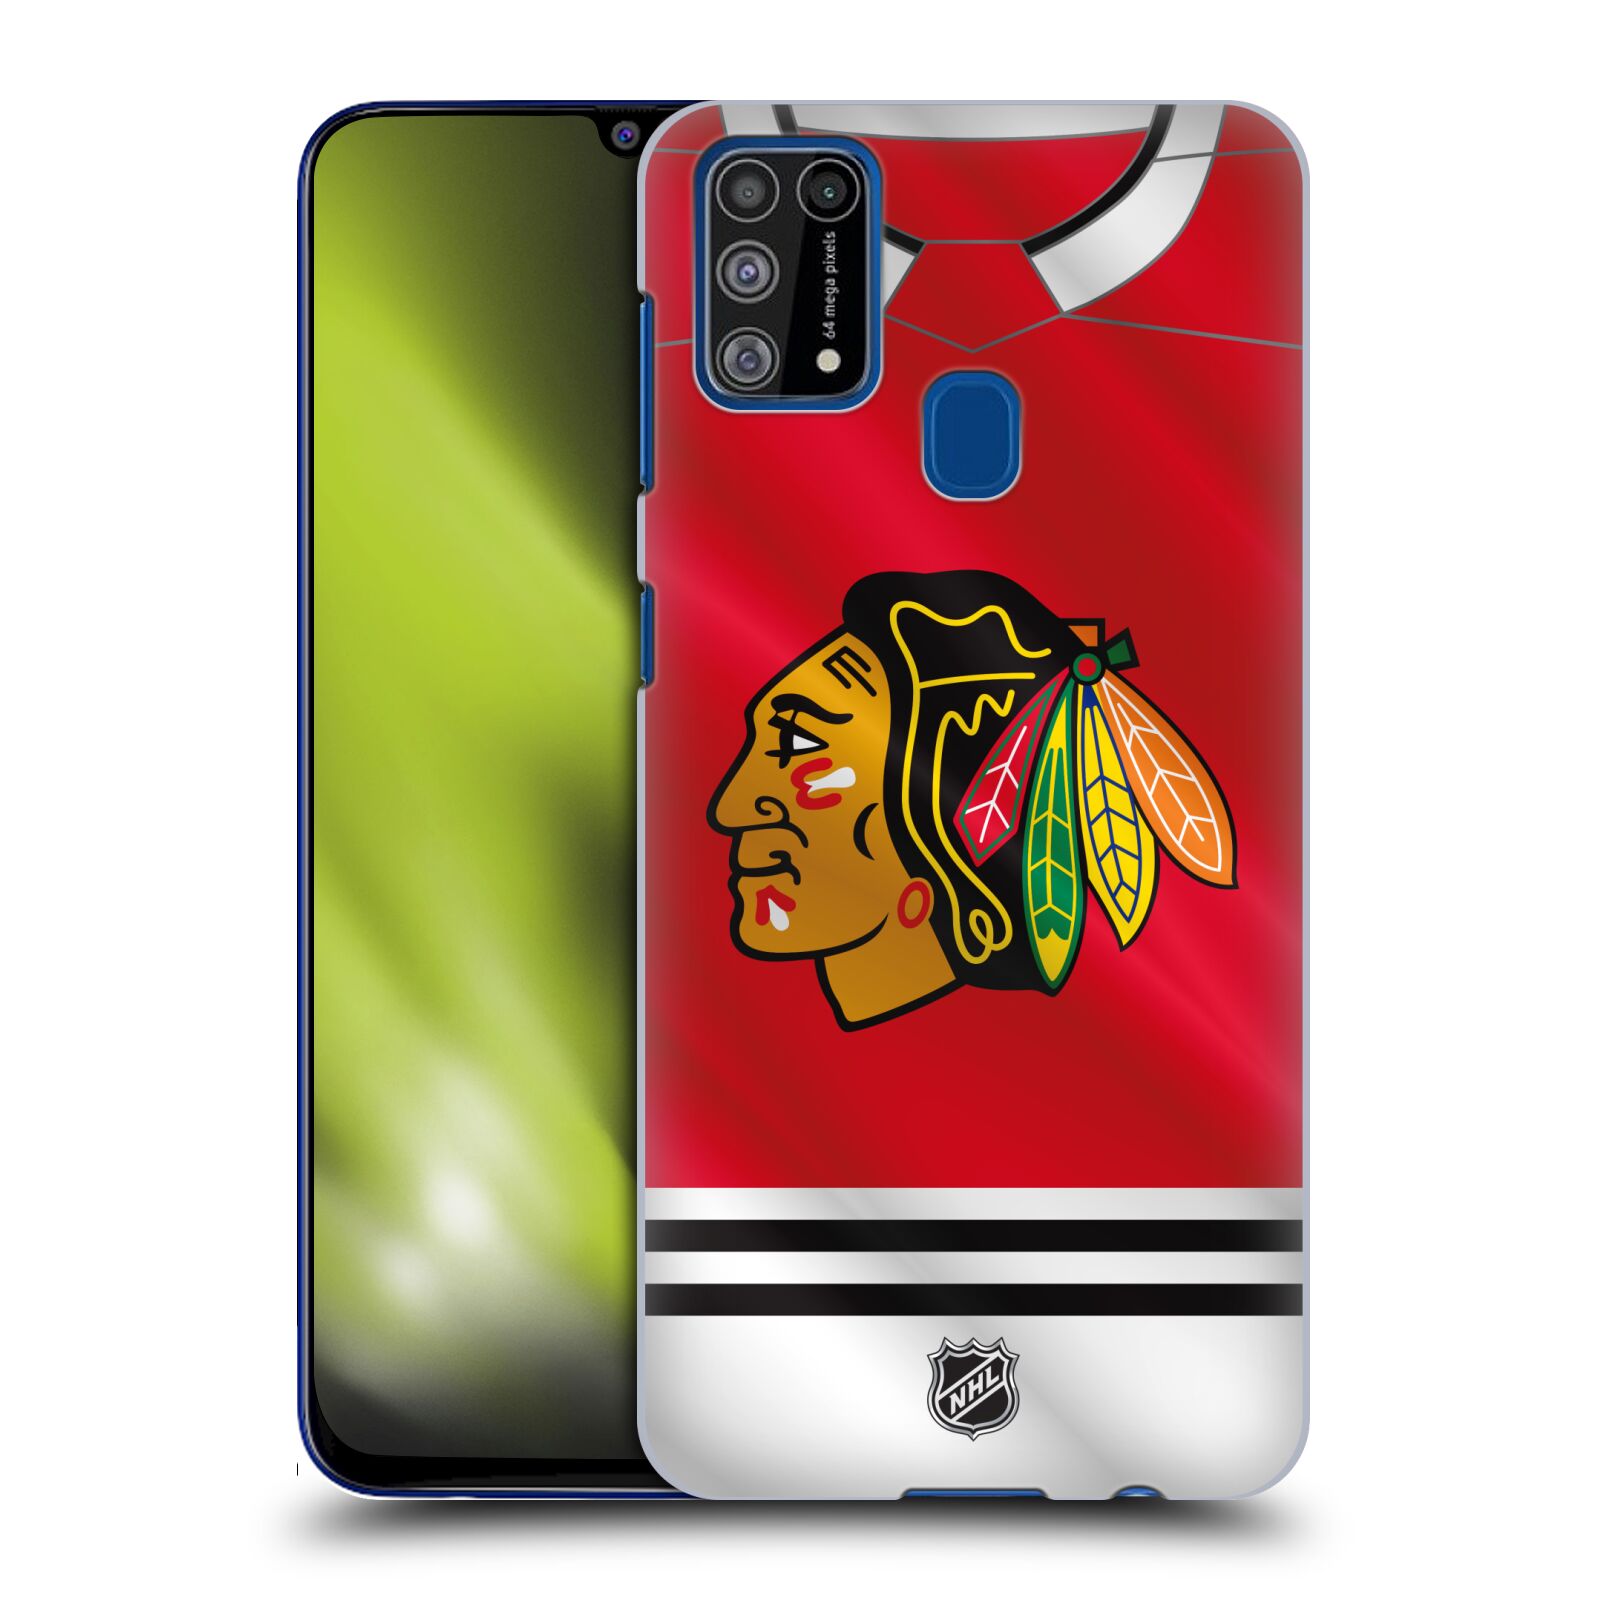 Pouzdro na mobil Samsung Galaxy M31 - HEAD CASE - Hokej NHL - Chicago Blackhawks - dres